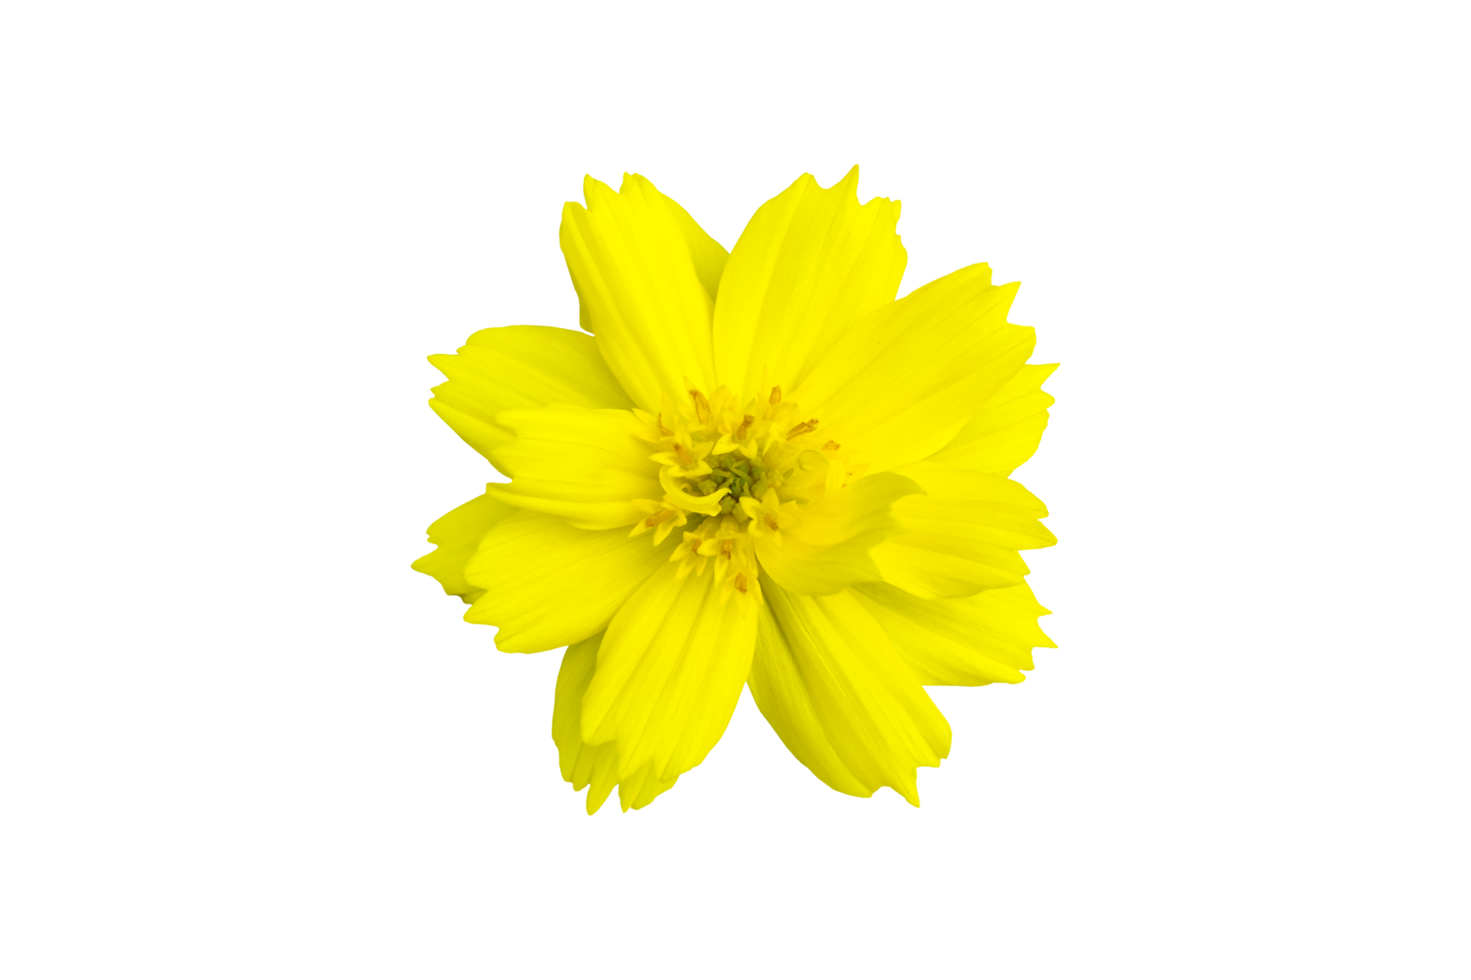 isolato giallo cosmo fiore con trasparente sfondo. png